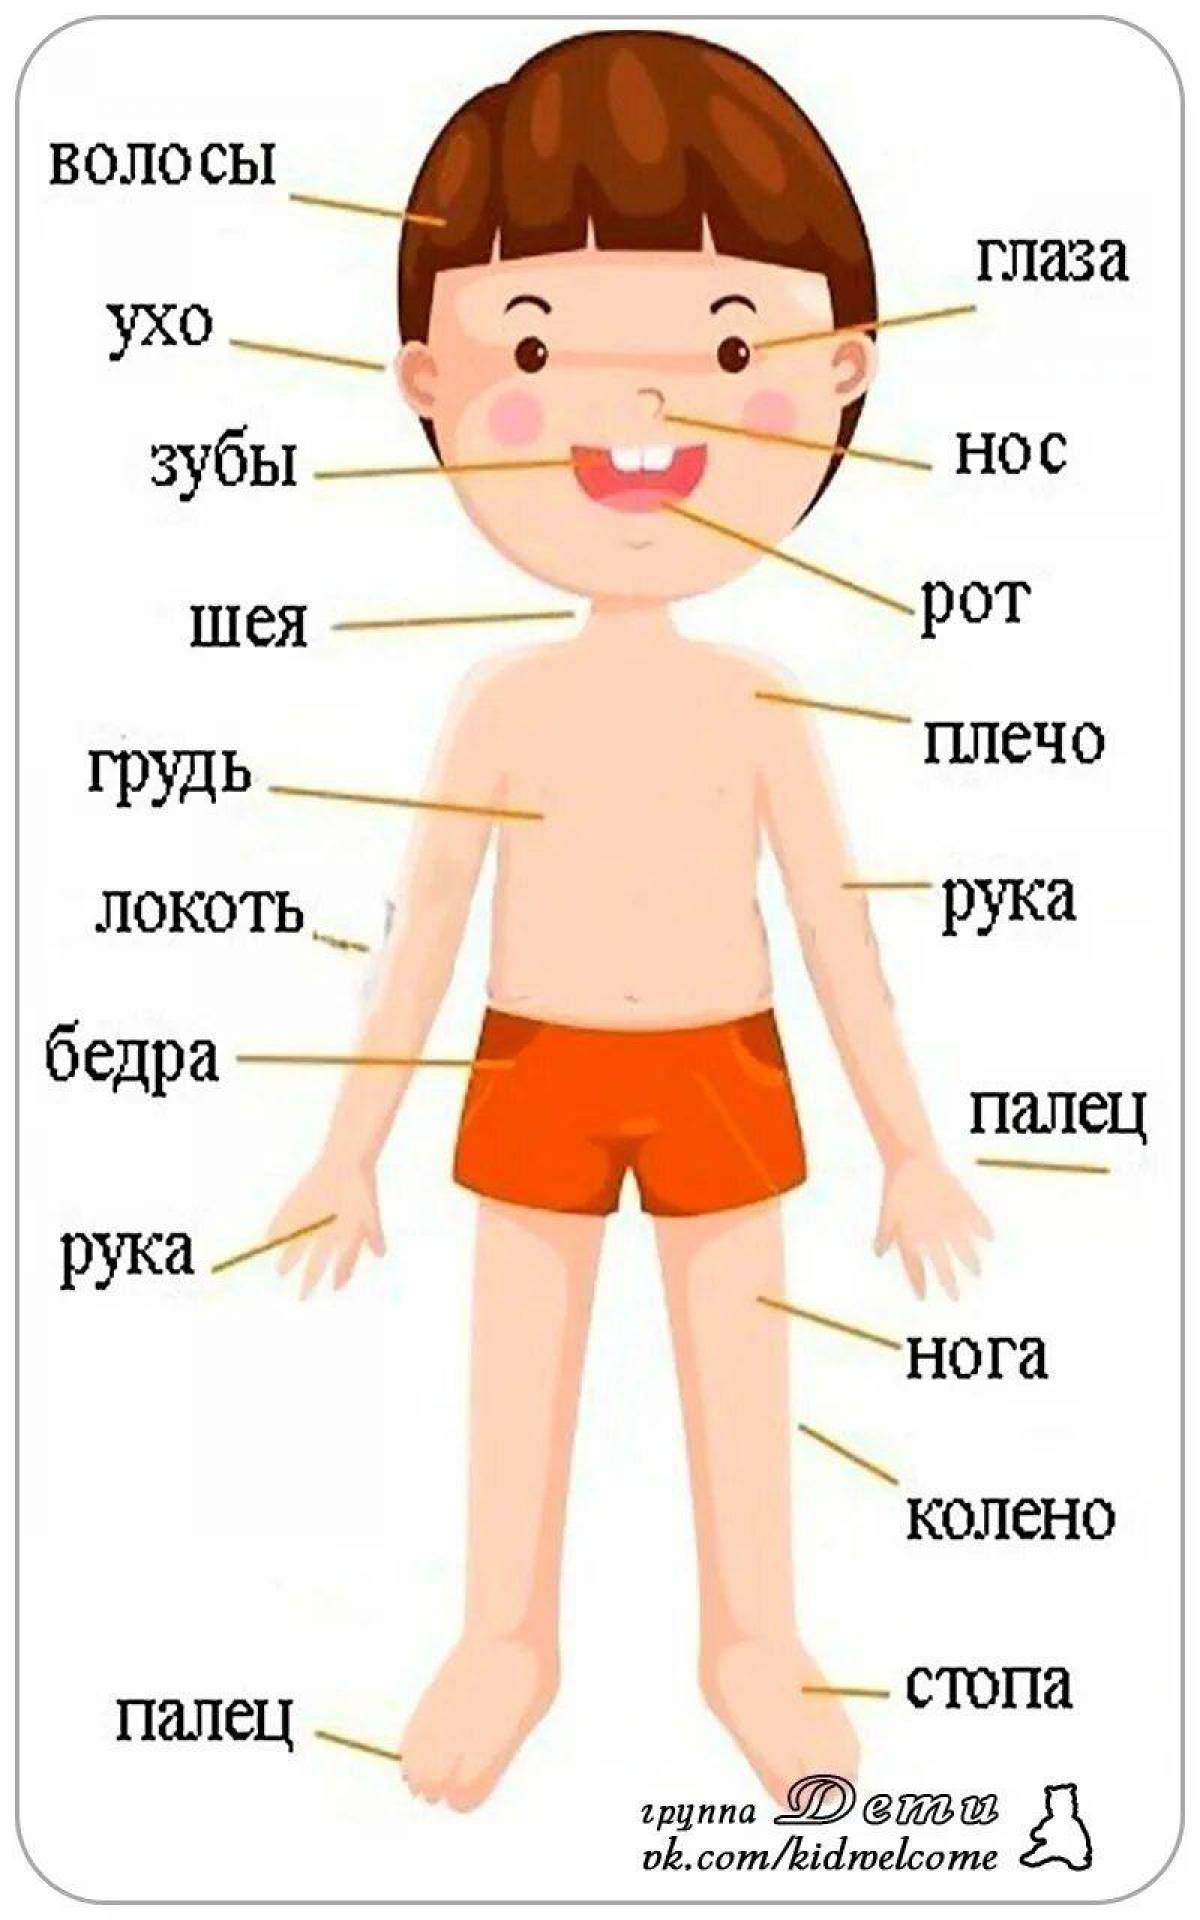 Название частей человека. Части тела человека для детей. Изображение ребенка для изучения частей тела. Строение человека для детей. Человек части тела для дошкольников.